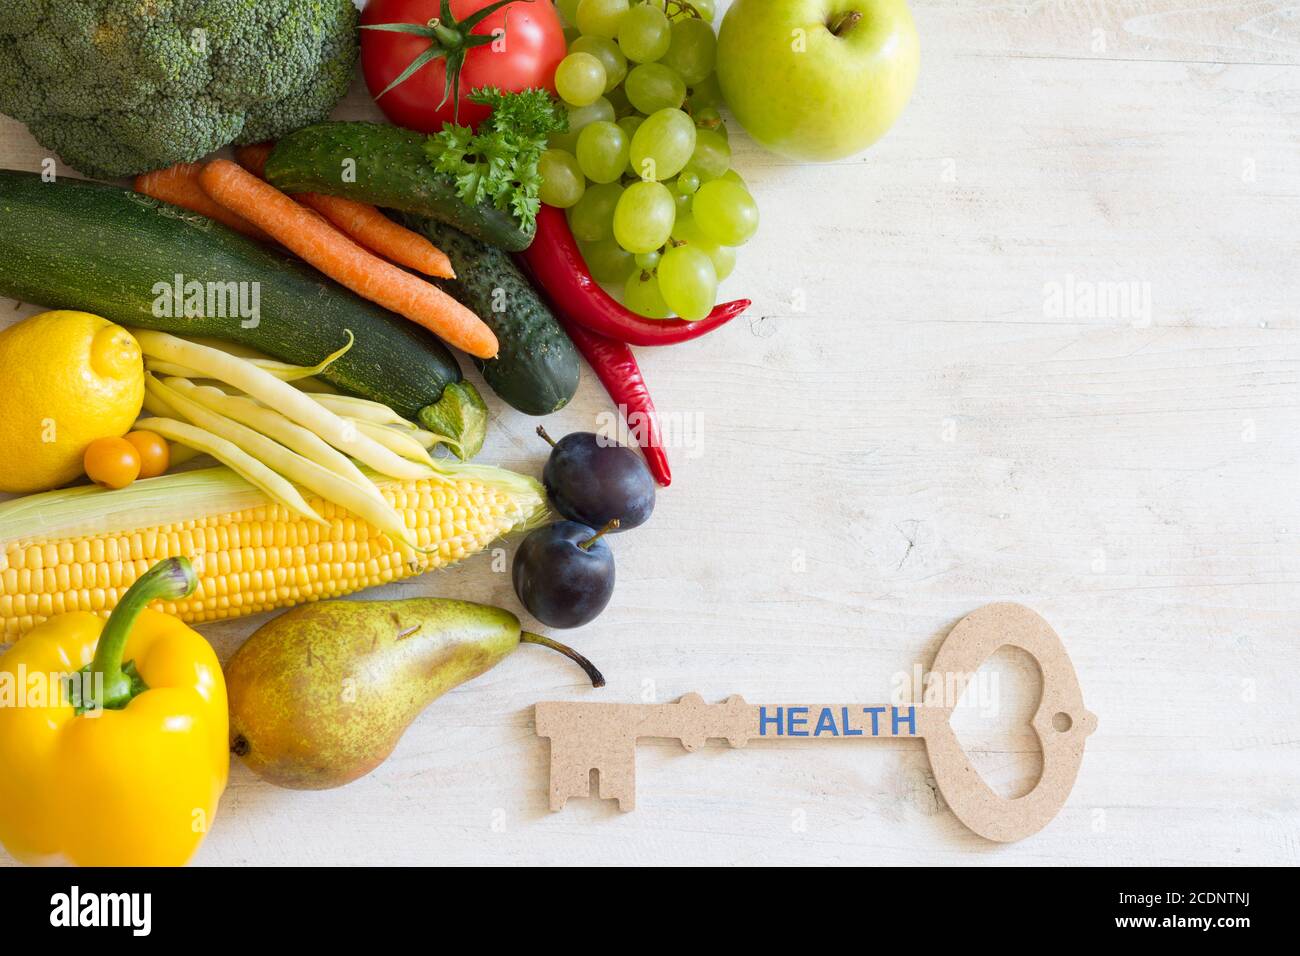 Chiave per la salute. Verdure e frutta con concetto chiave di stile di vita sano Foto Stock